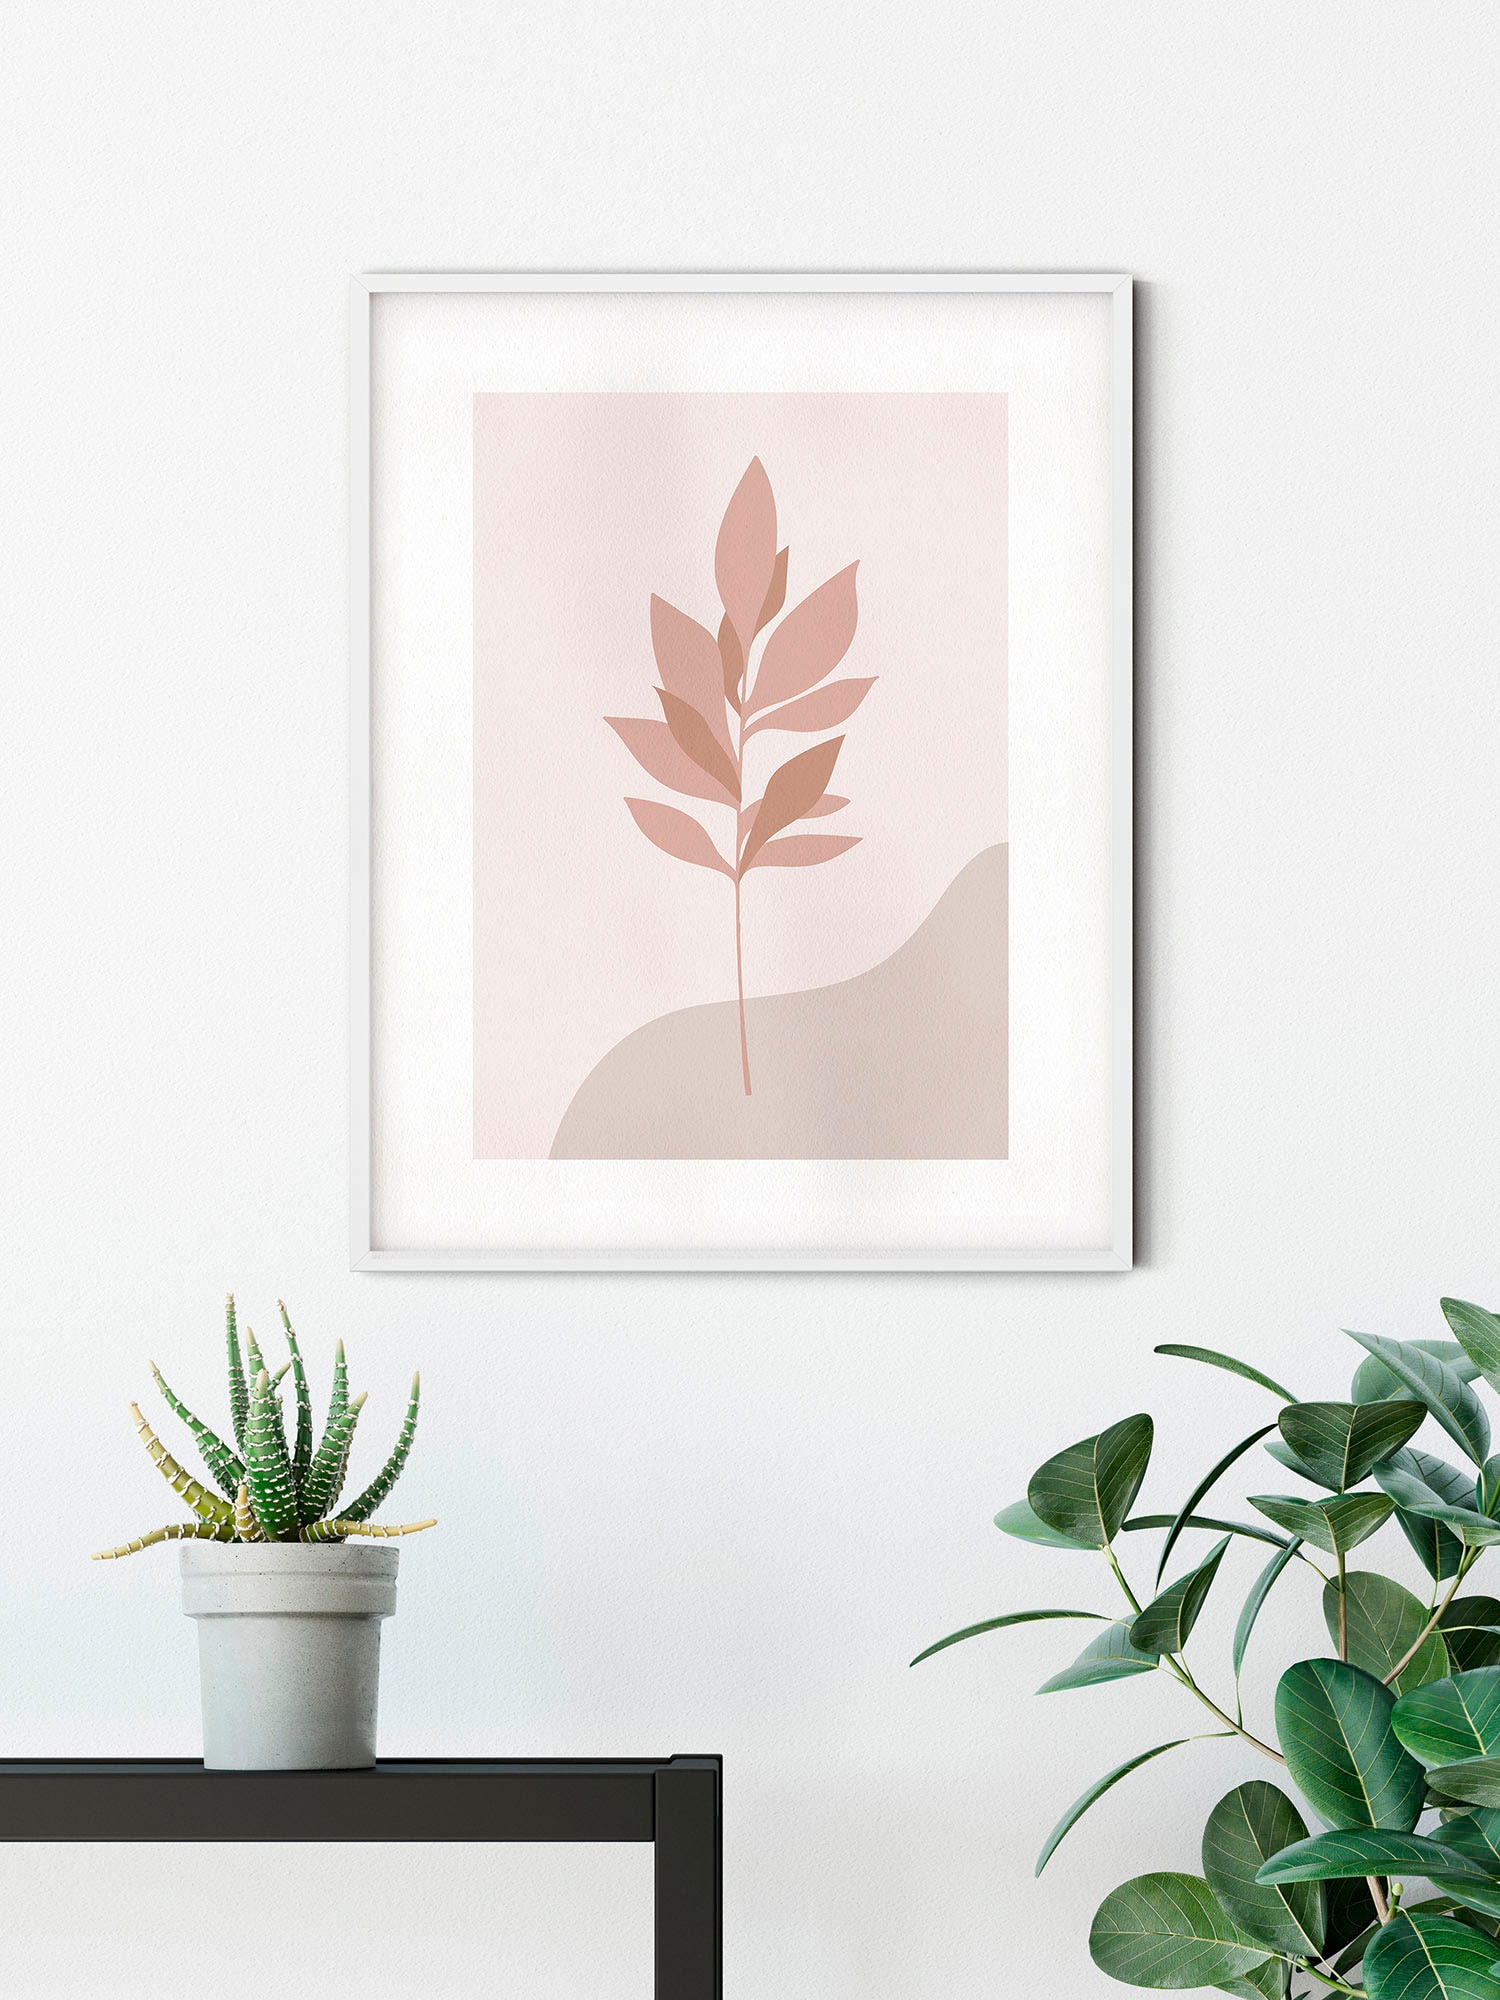 Komar Wandbild »Pink Desert«, (1 St.), Deutsches Premium-Poster Fotopapier mit seidenmatter Oberfläche und hoher Lichtbeständigkeit. Für fotorealistische Drucke mit gestochen scharfen Details und hervorragender Farbbrillanz.